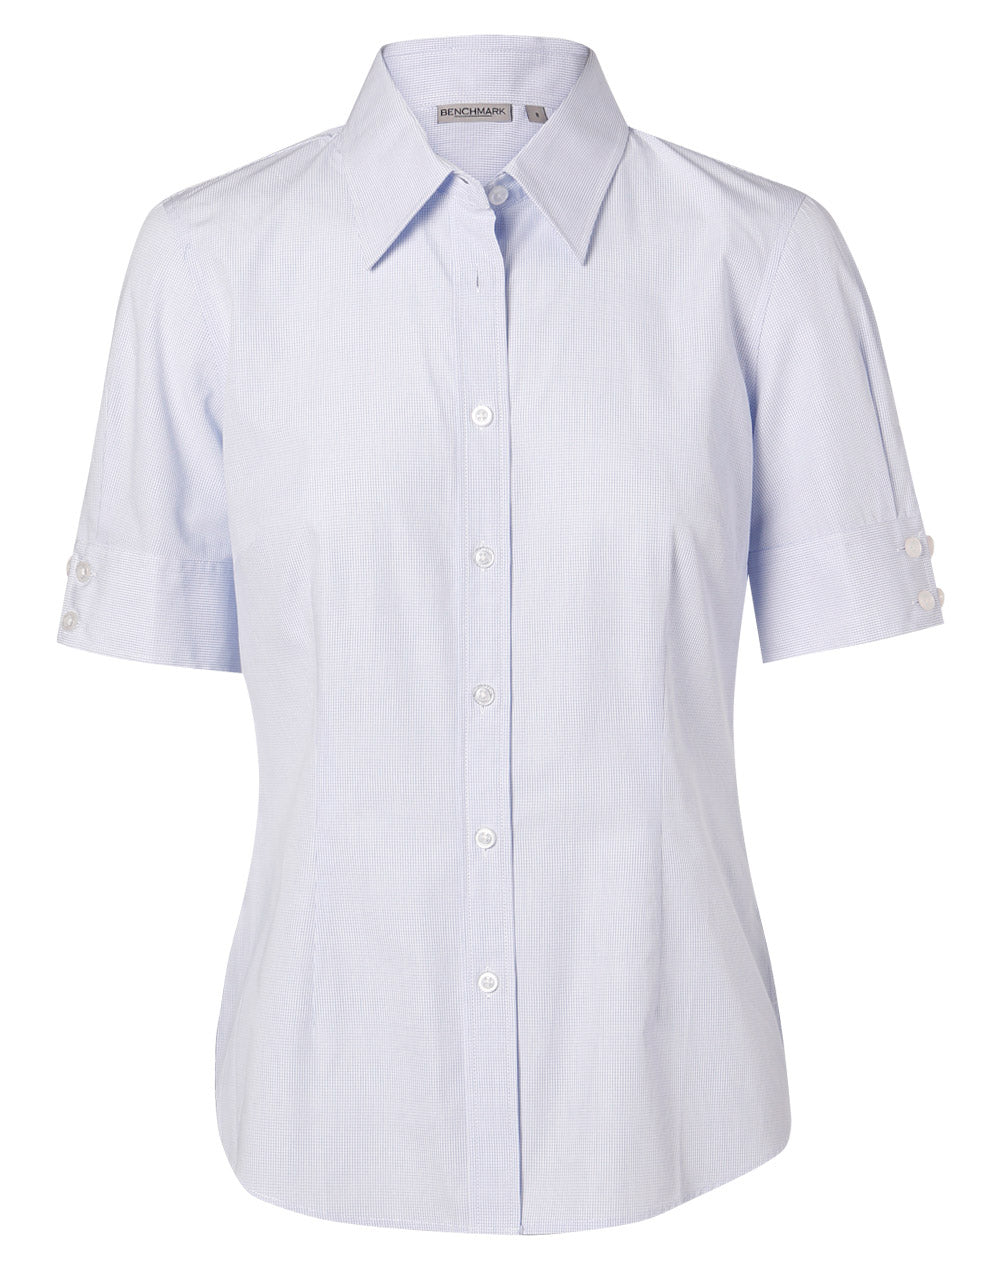 Winning Spirit-Women's Mini Check Short Sleeve Shirt-M8360S